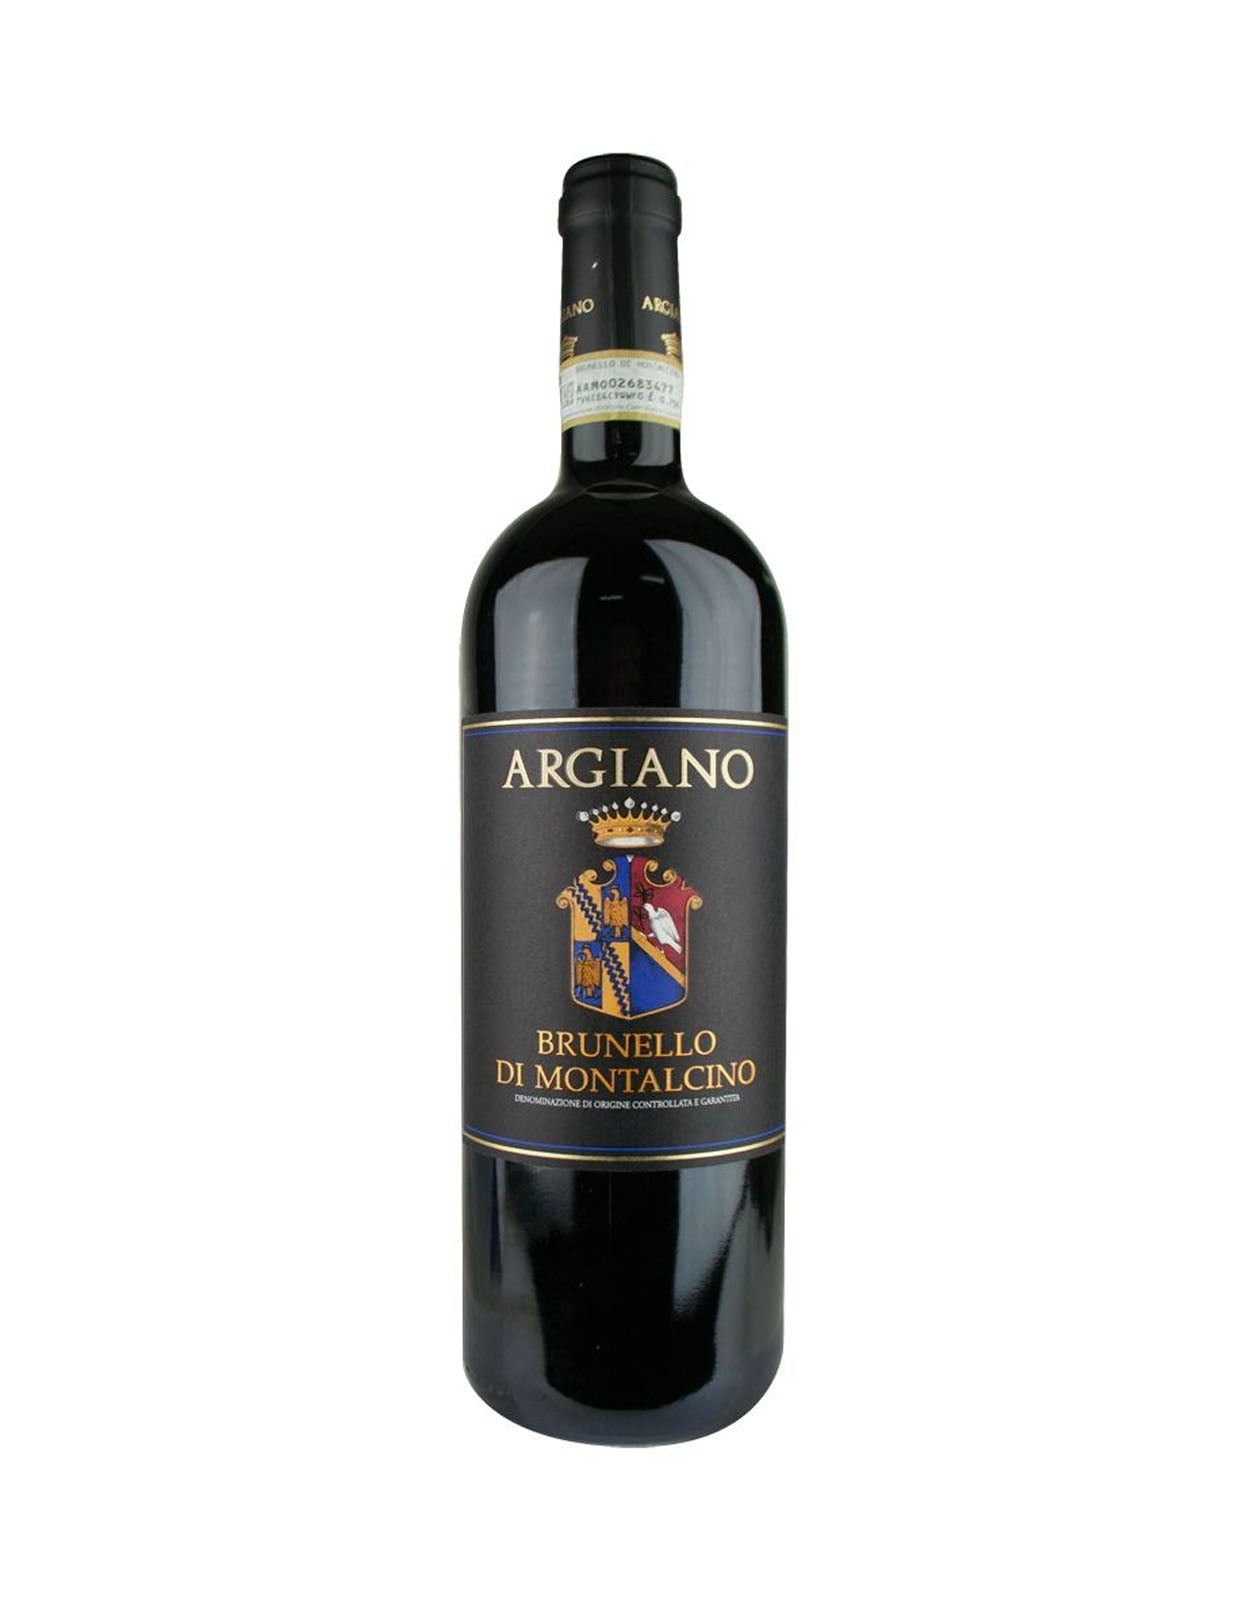 Argiano Brunello di Montalcino 2014 - 1.5 Litre Bottle